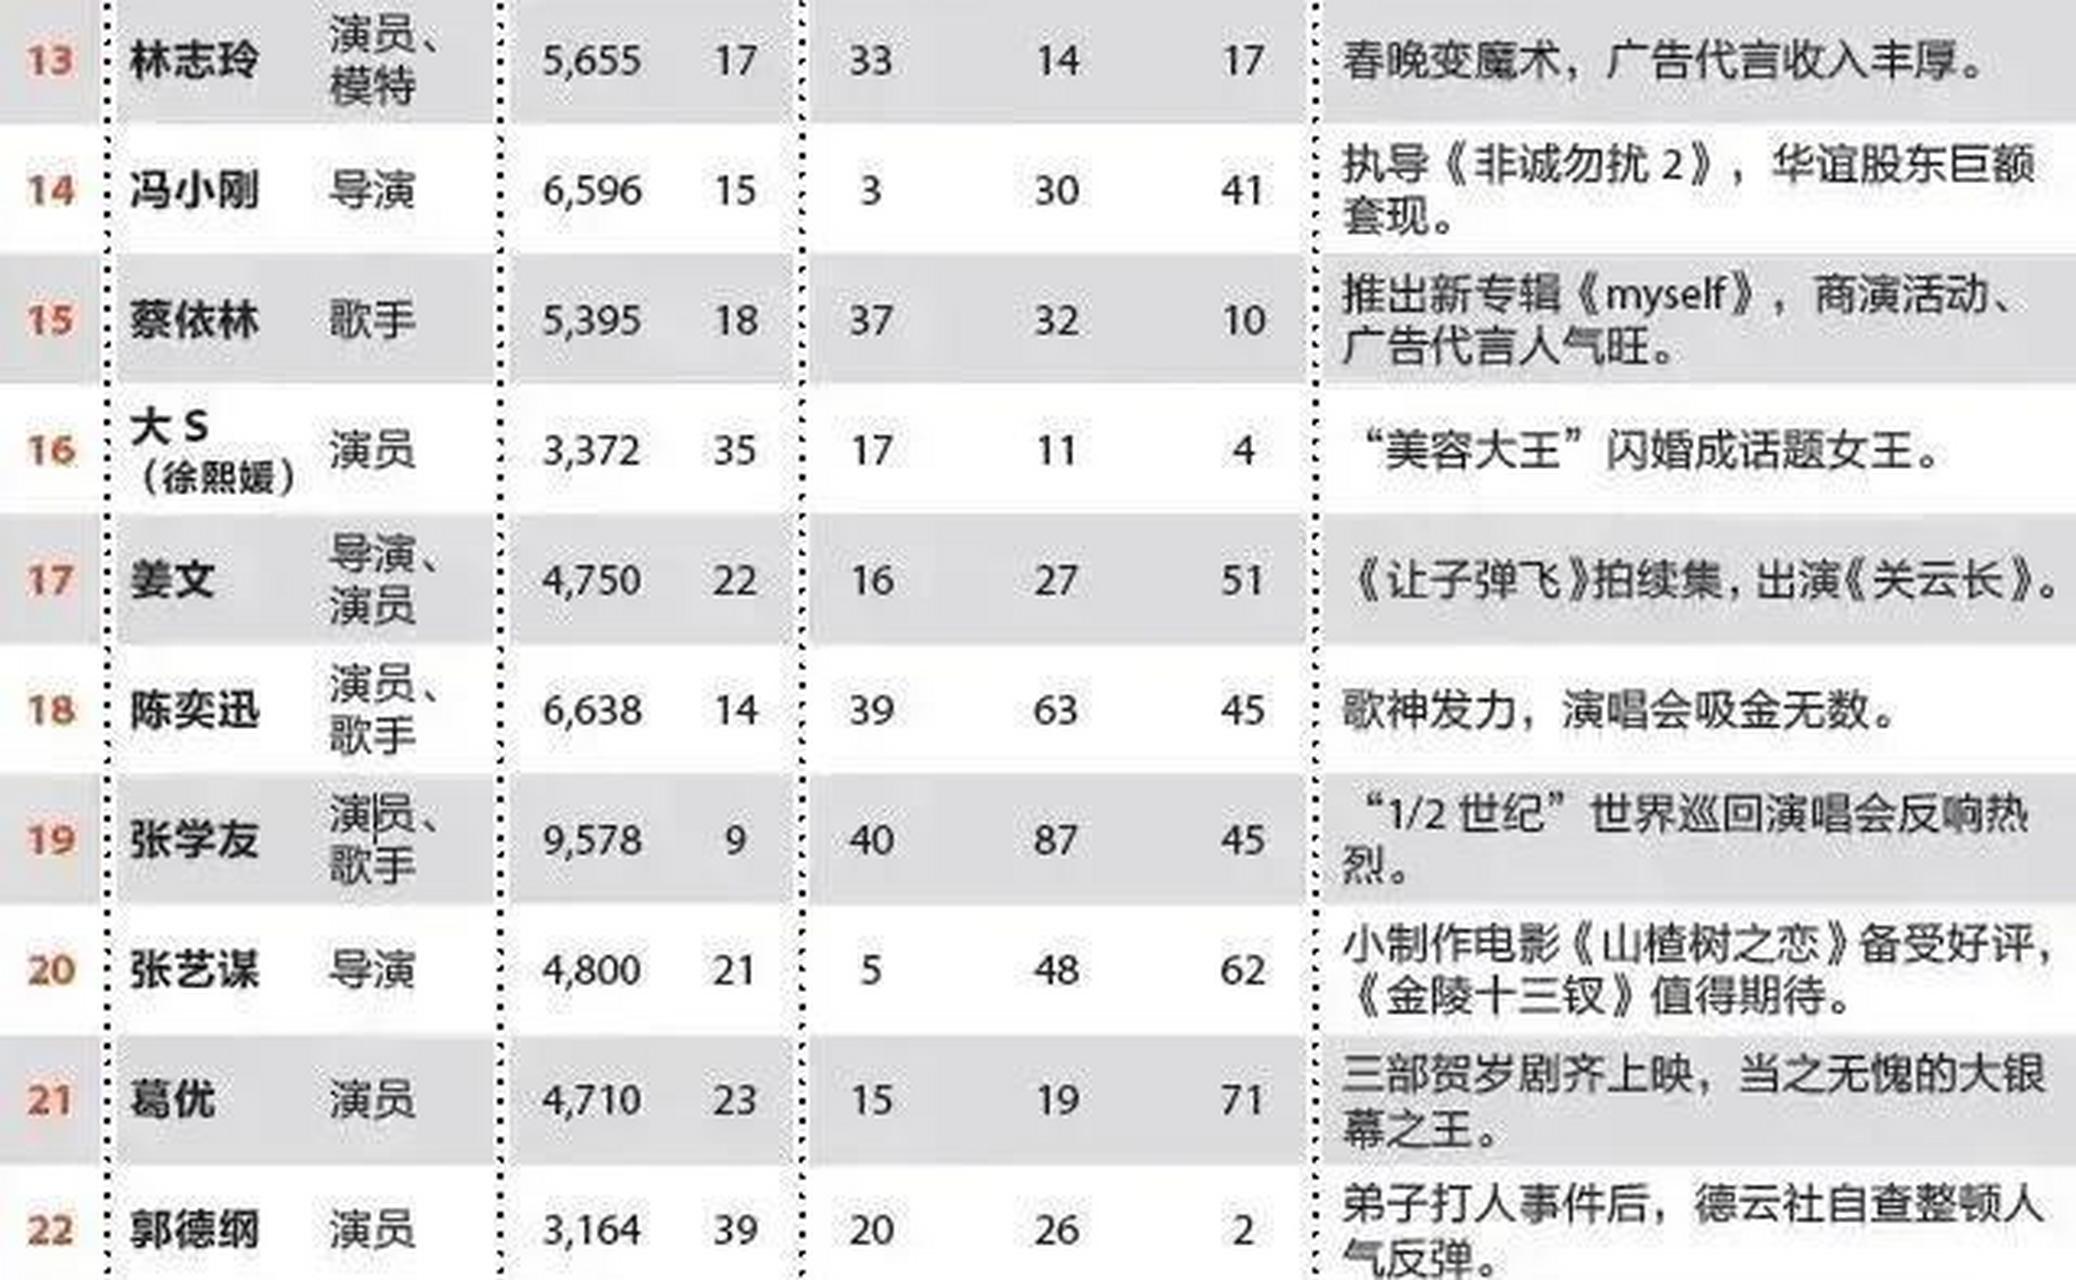 2011年福布斯中国名人榜单一览,刘德华领跑全榜,王菲力压章子怡